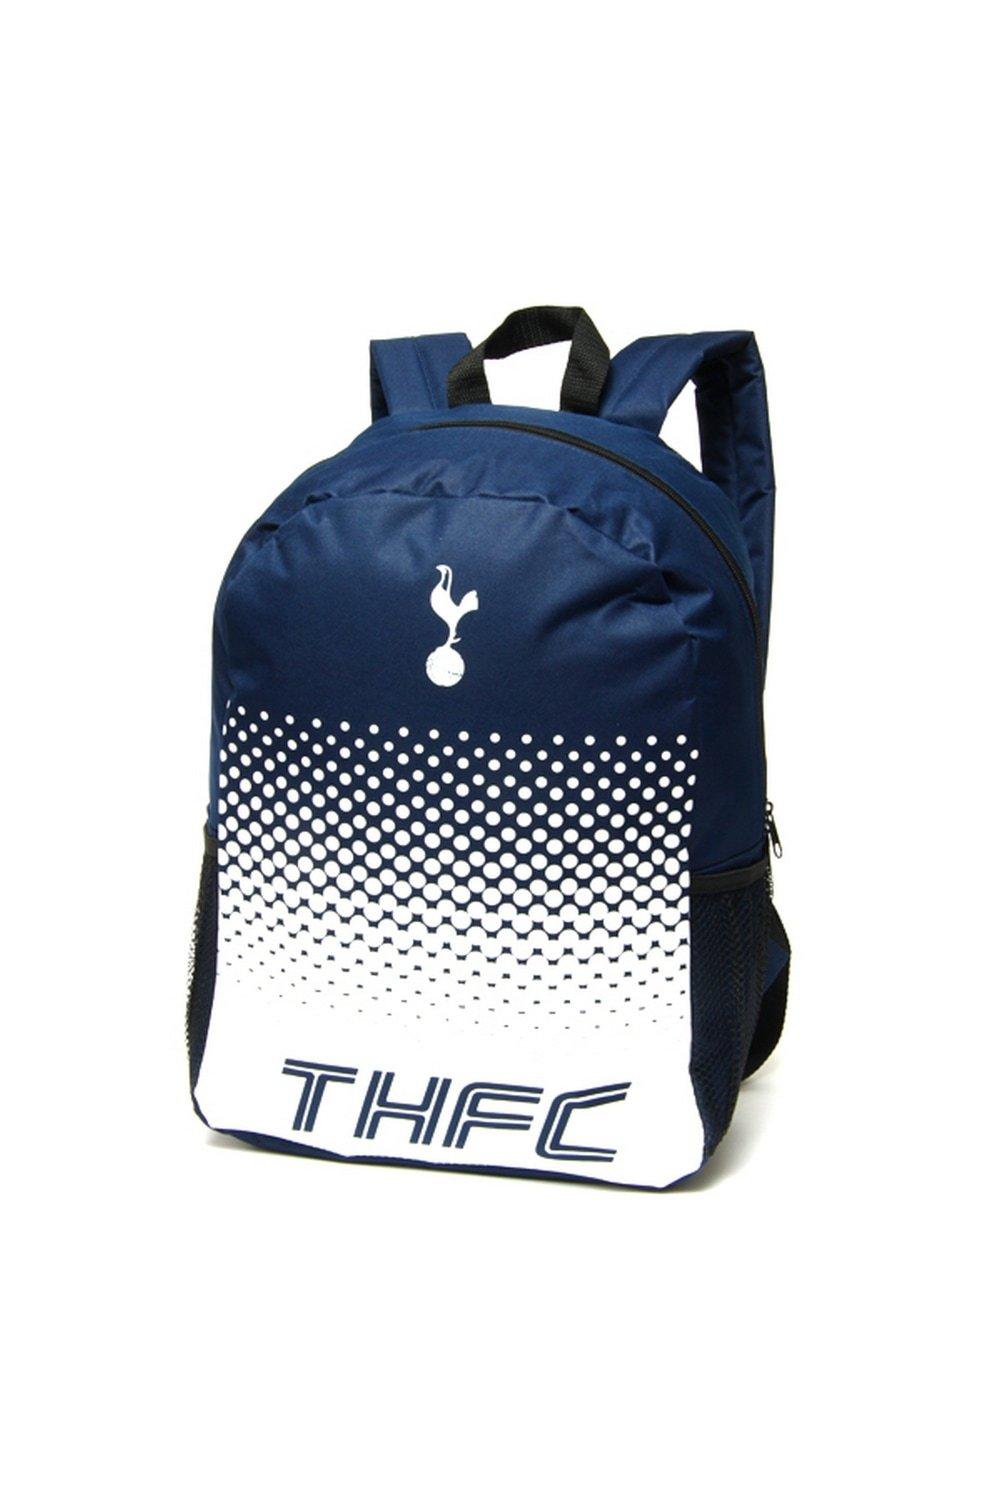 Официальный рюкзак Fade Football Crest Tottenham Hotspur FC, темно-синий коган марина соломоновна с игрой круглый год в школе и на каникулах